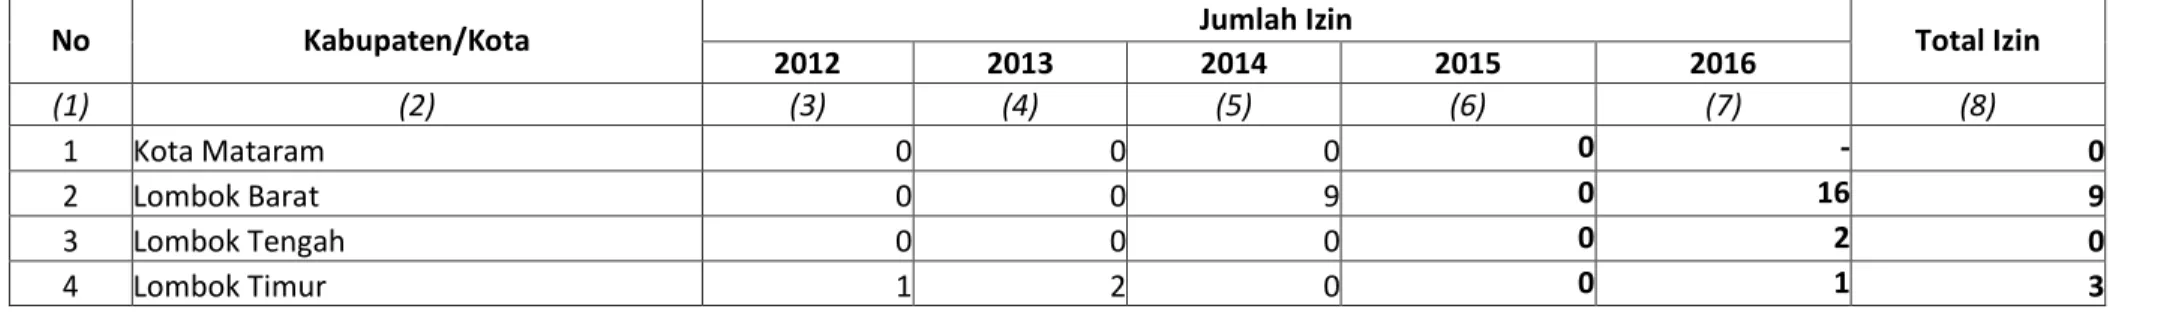 Tabel 5.2 Data Jumlah Izin Hutan Kemasyarakatan Tiap Kabupaten/Kota, Periode 2012-2016 